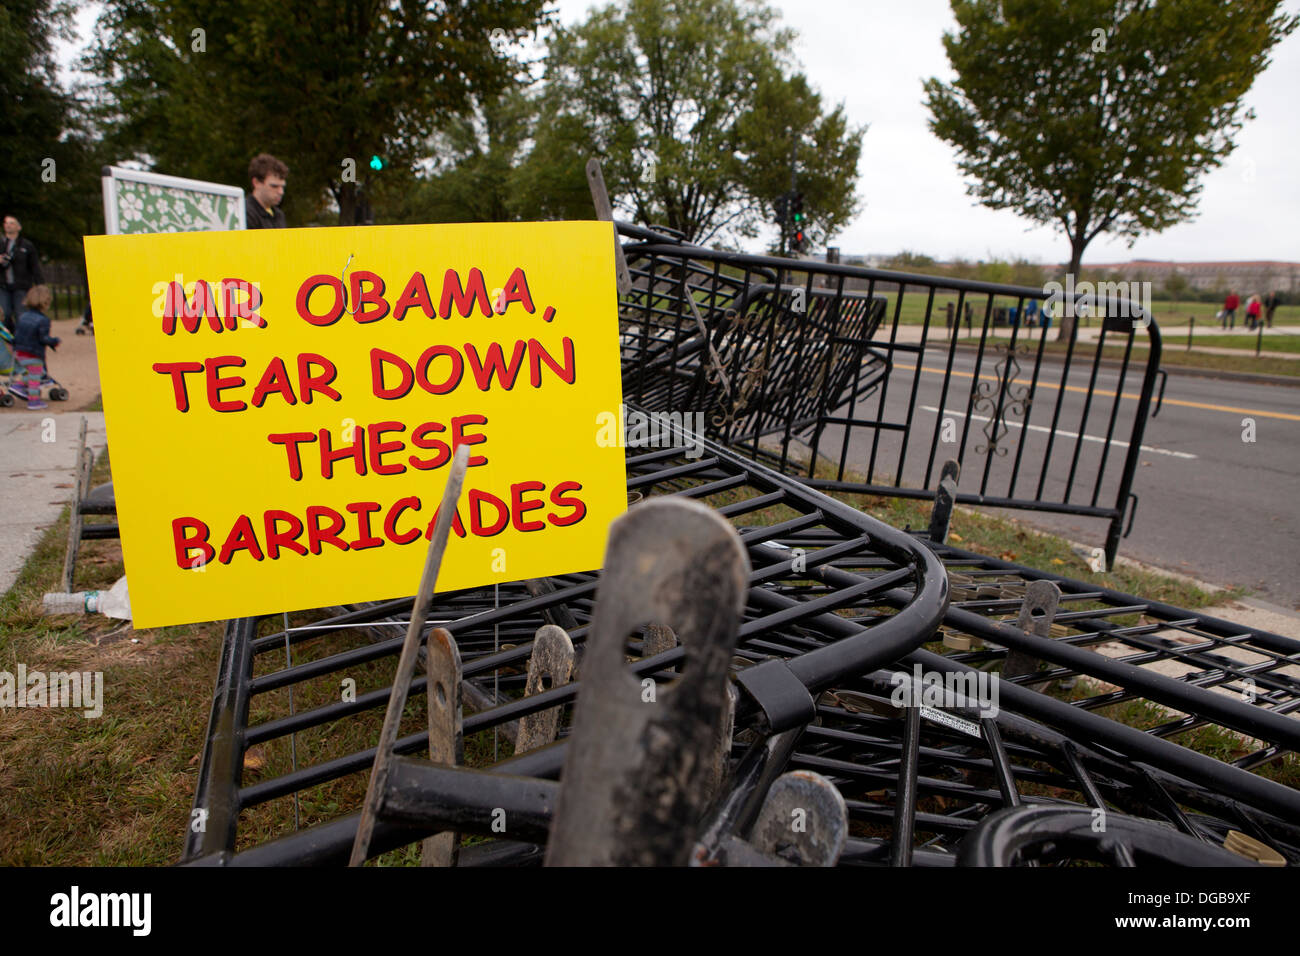 Disassembled barricades - Washington, DC USA Stock Photo